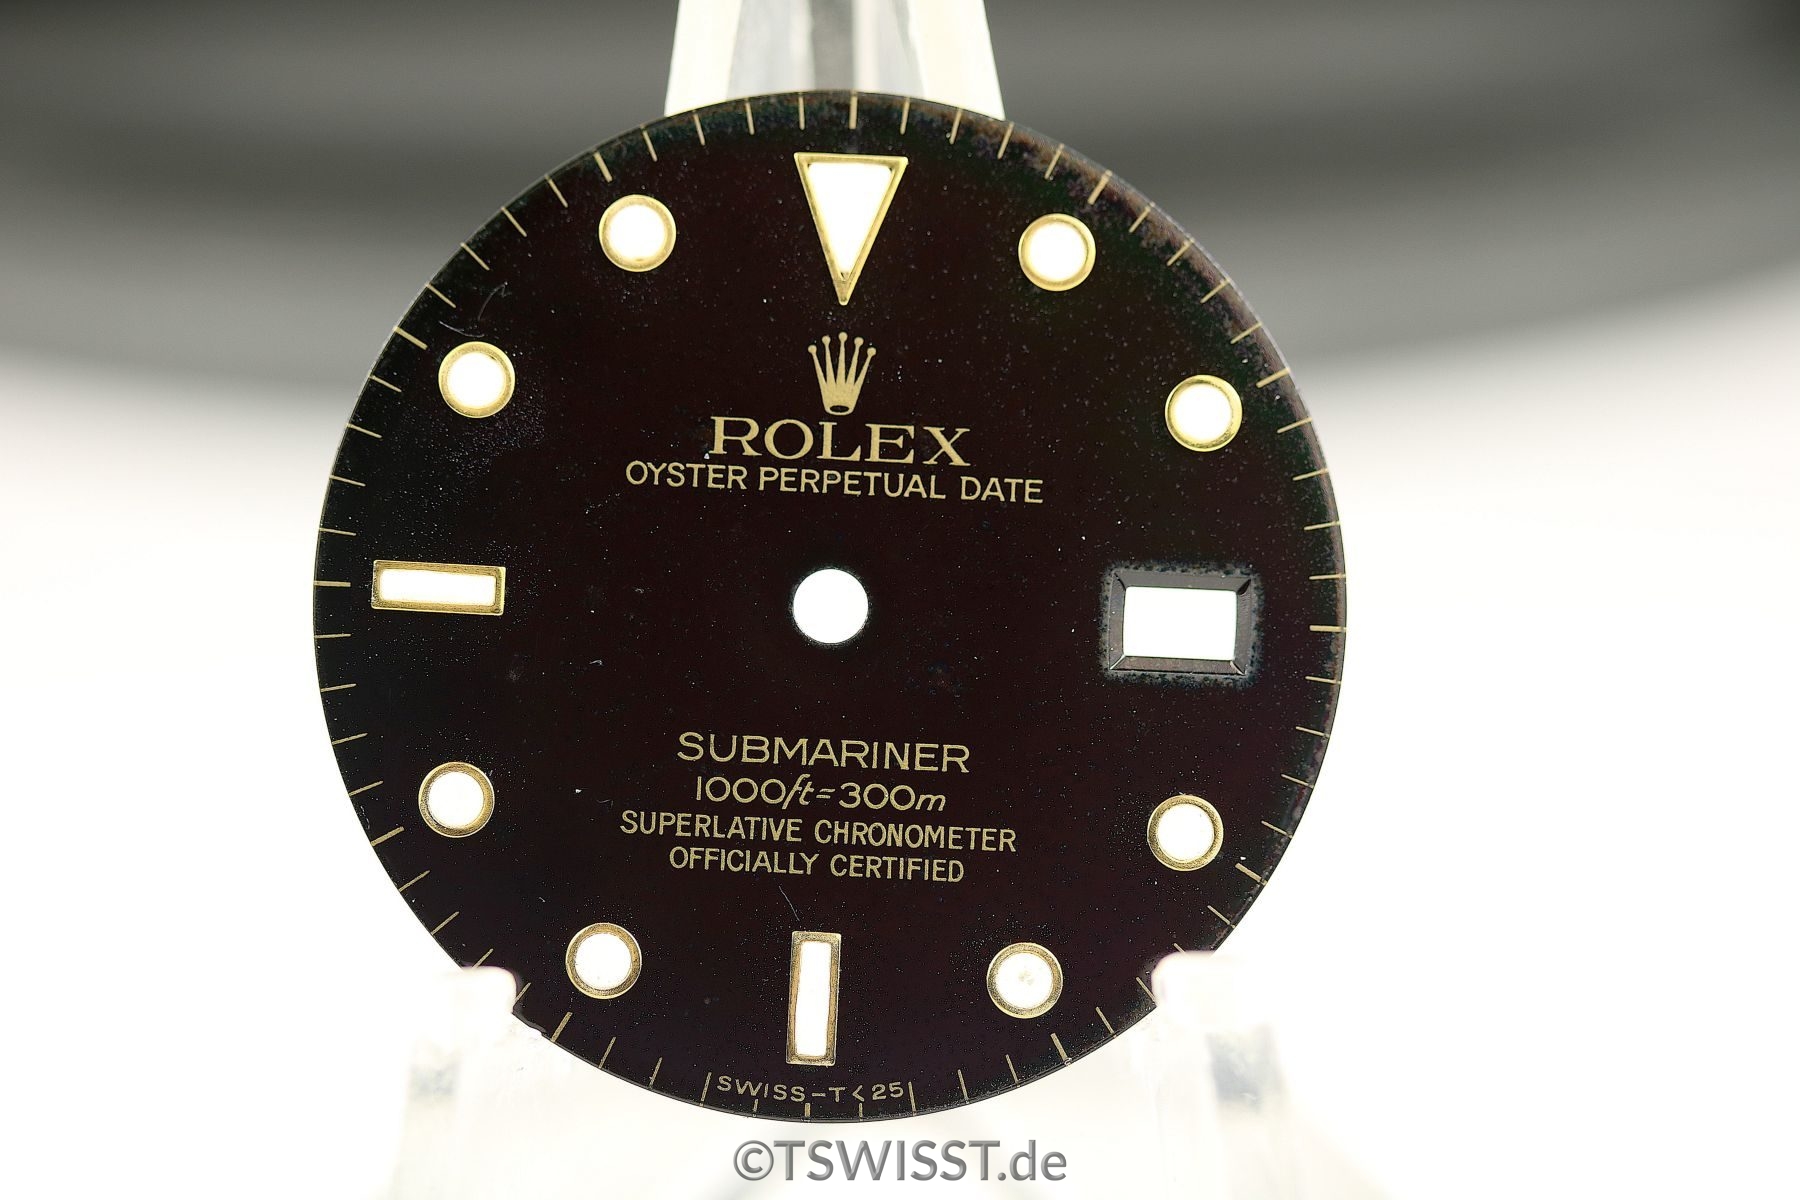 Rolex Submariner 16808 dial